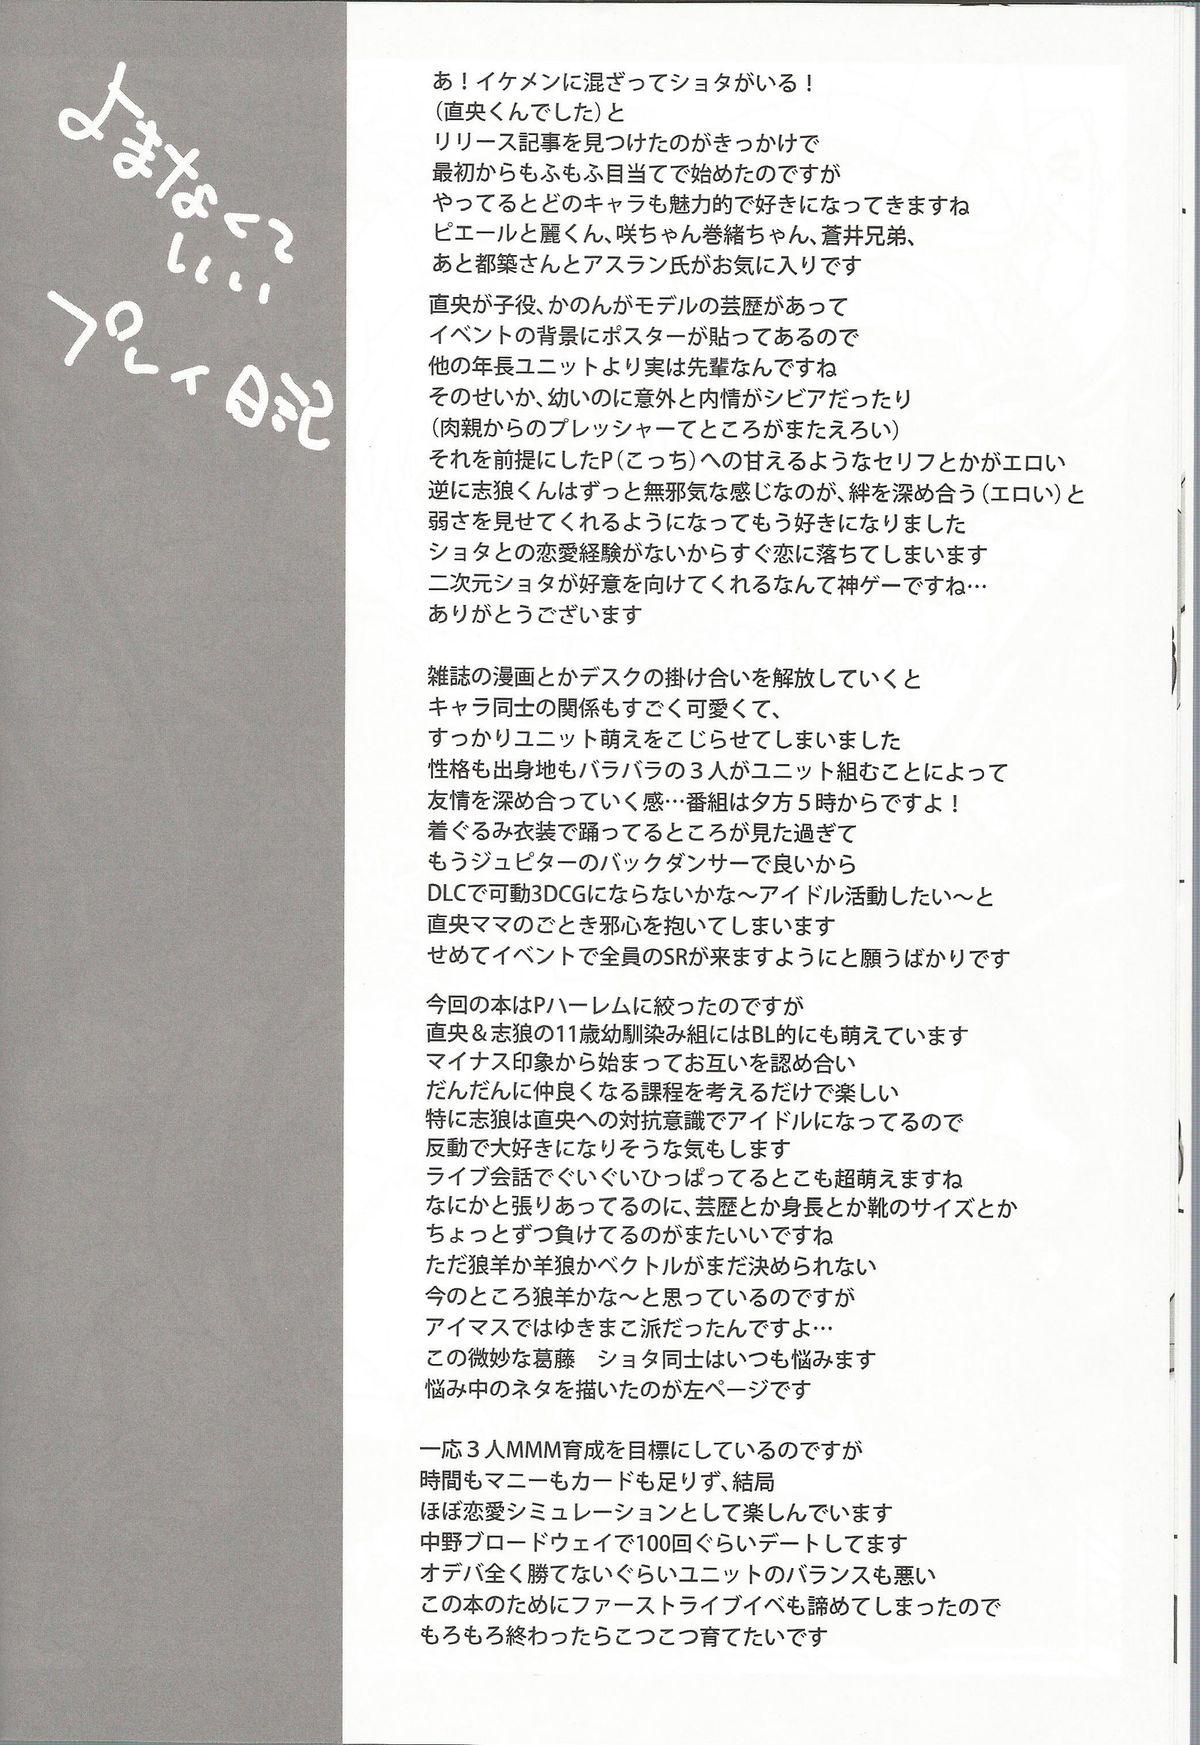 Snatch Toppatsu! Mofugyu! - The idolmaster Gag - Page 9